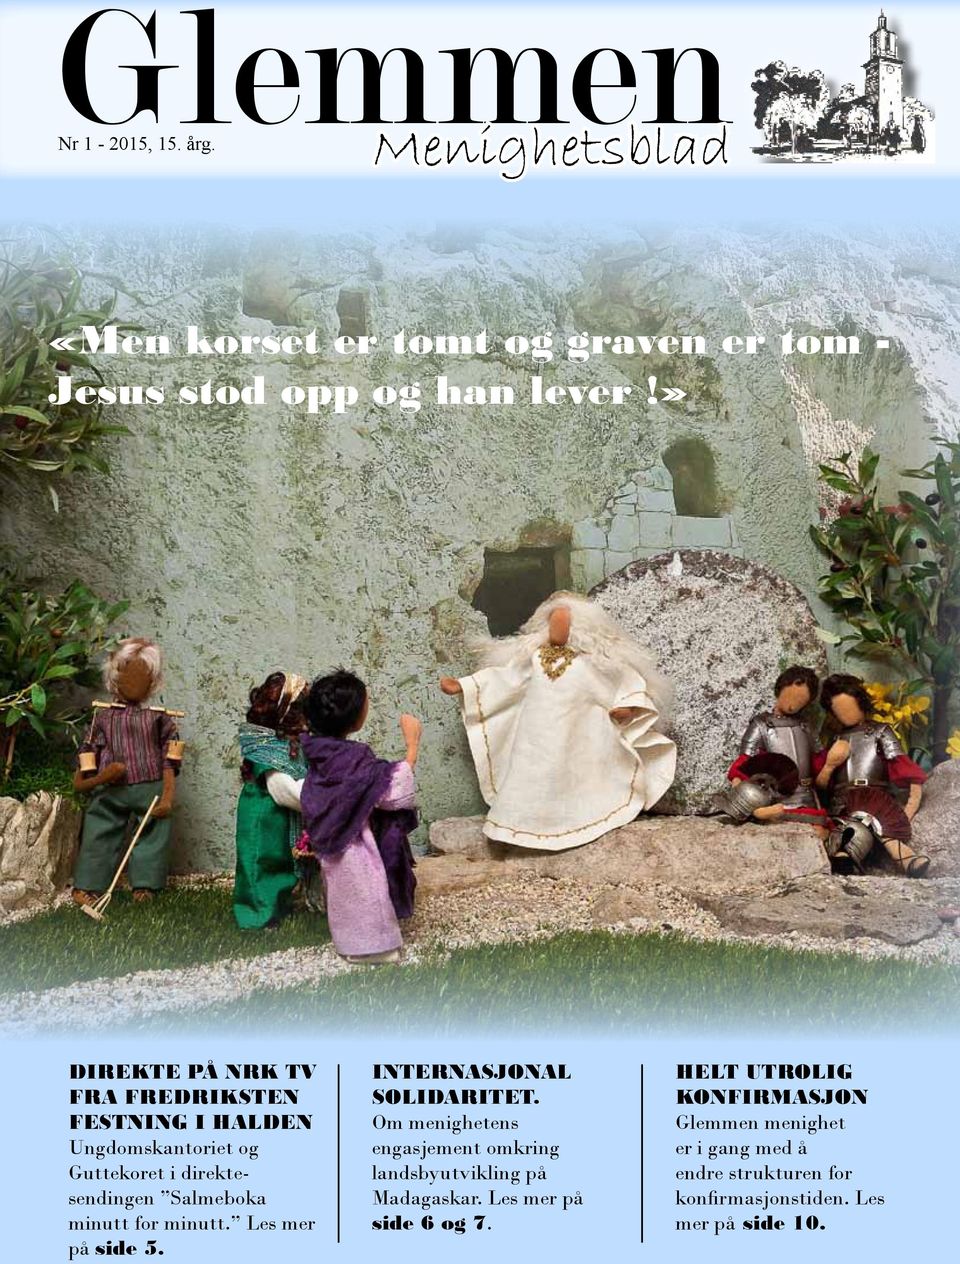 minutt. Les mer på side 5. INTERNASJONAL SOLIDARITET. Om menighetens engasjement omkring landsbyutvikling på Madagaskar.